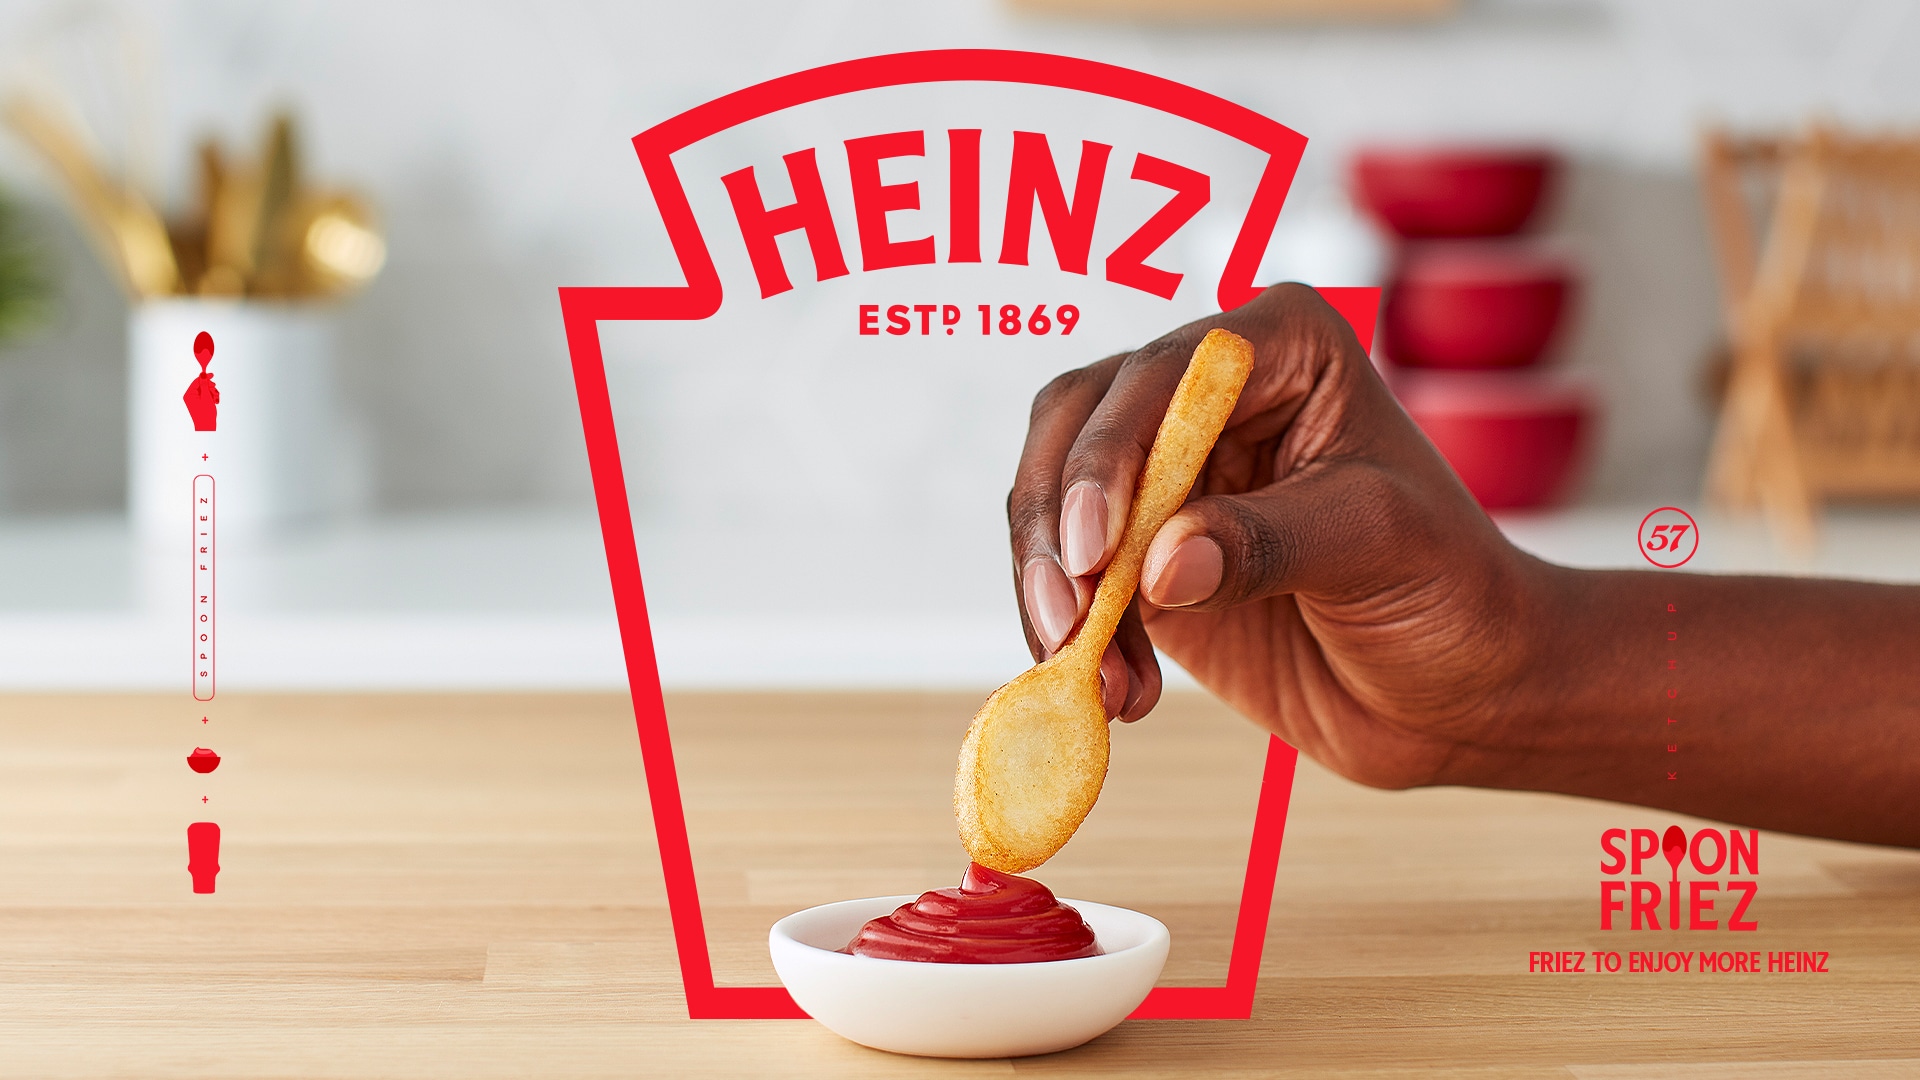 Africa e Heinz Global apresentam a “Heinz Spoon Friez”, a batata frita colher para amantes de molho